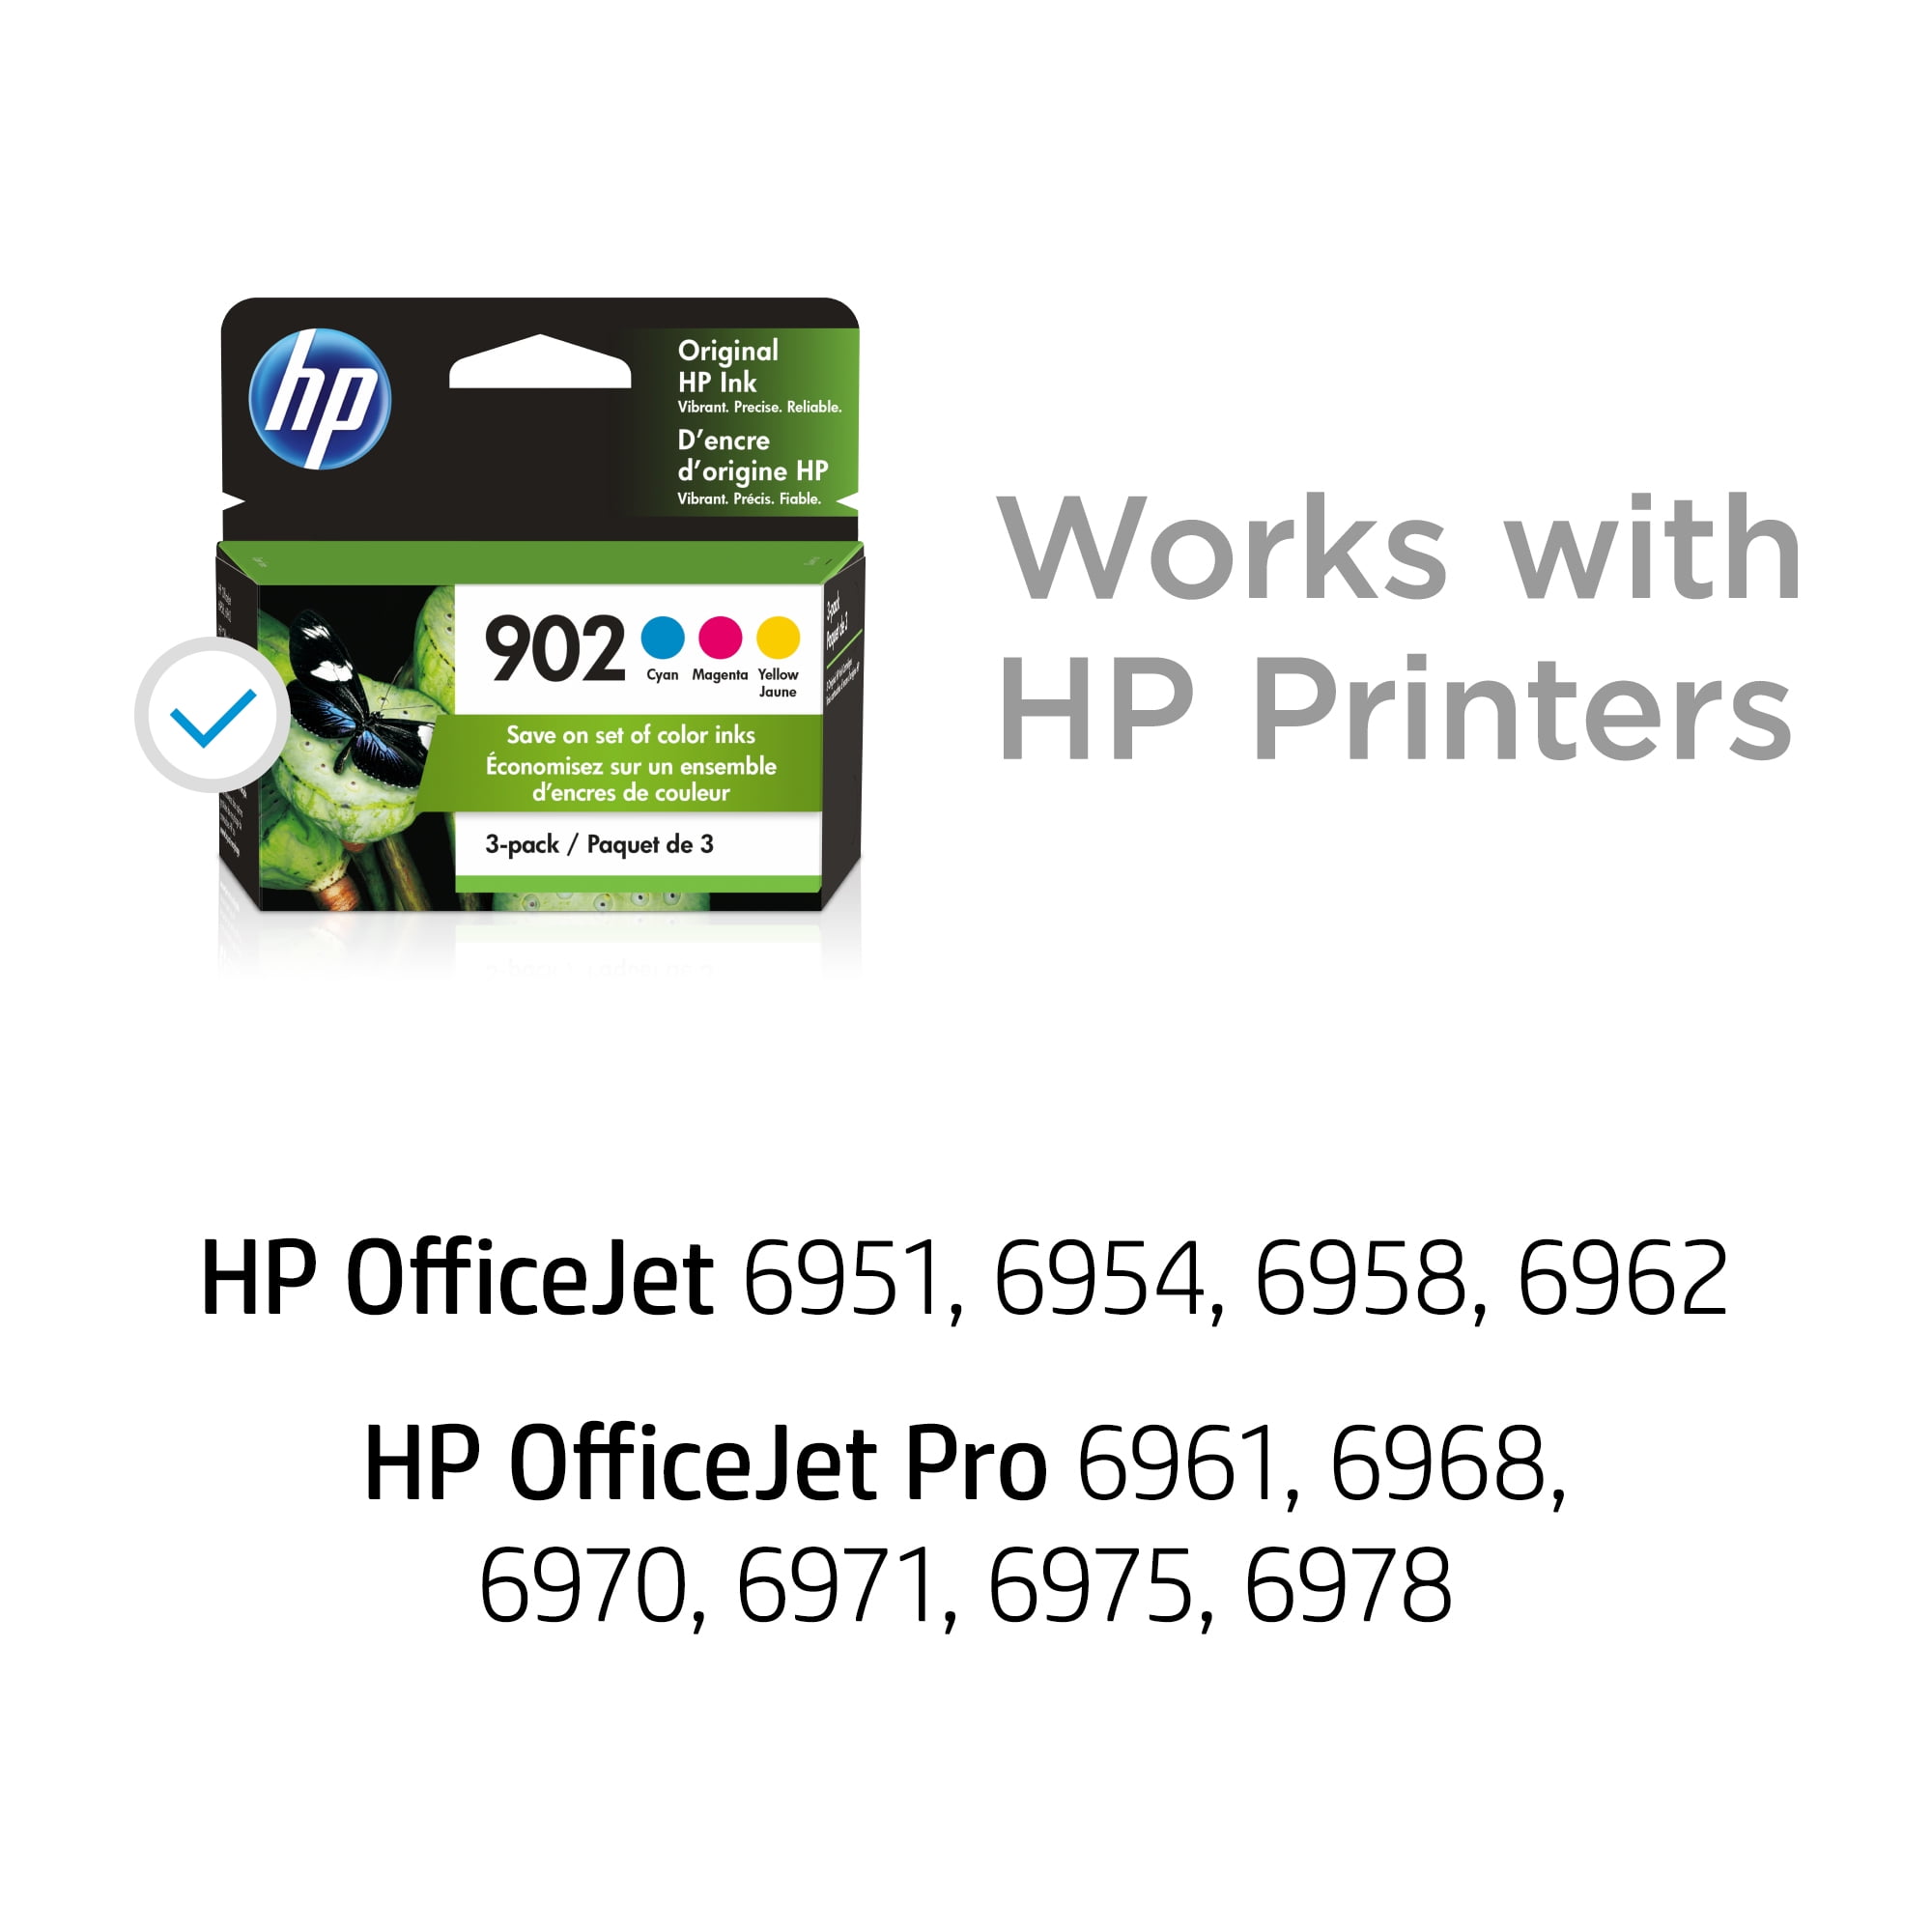 Commandez des encres et toners HP OfficeJet Pro 6970